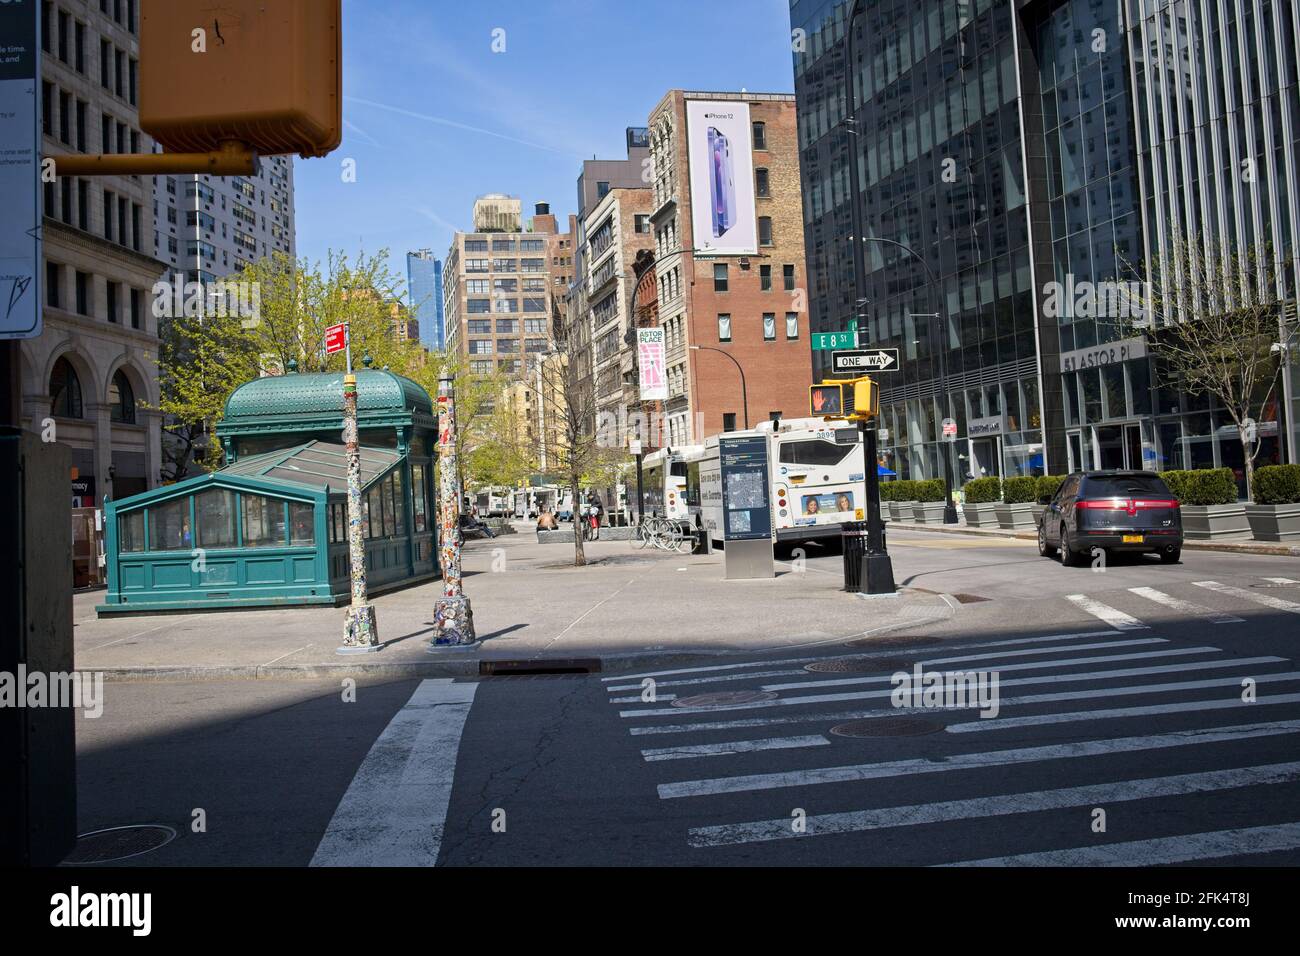 New York, NY, États-Unis - 28 avril 2021 : entrée du métro Astor place sur la 8th Street, vue sur le quartier chic le long de la Fourth Avenue à Manhattan Banque D'Images